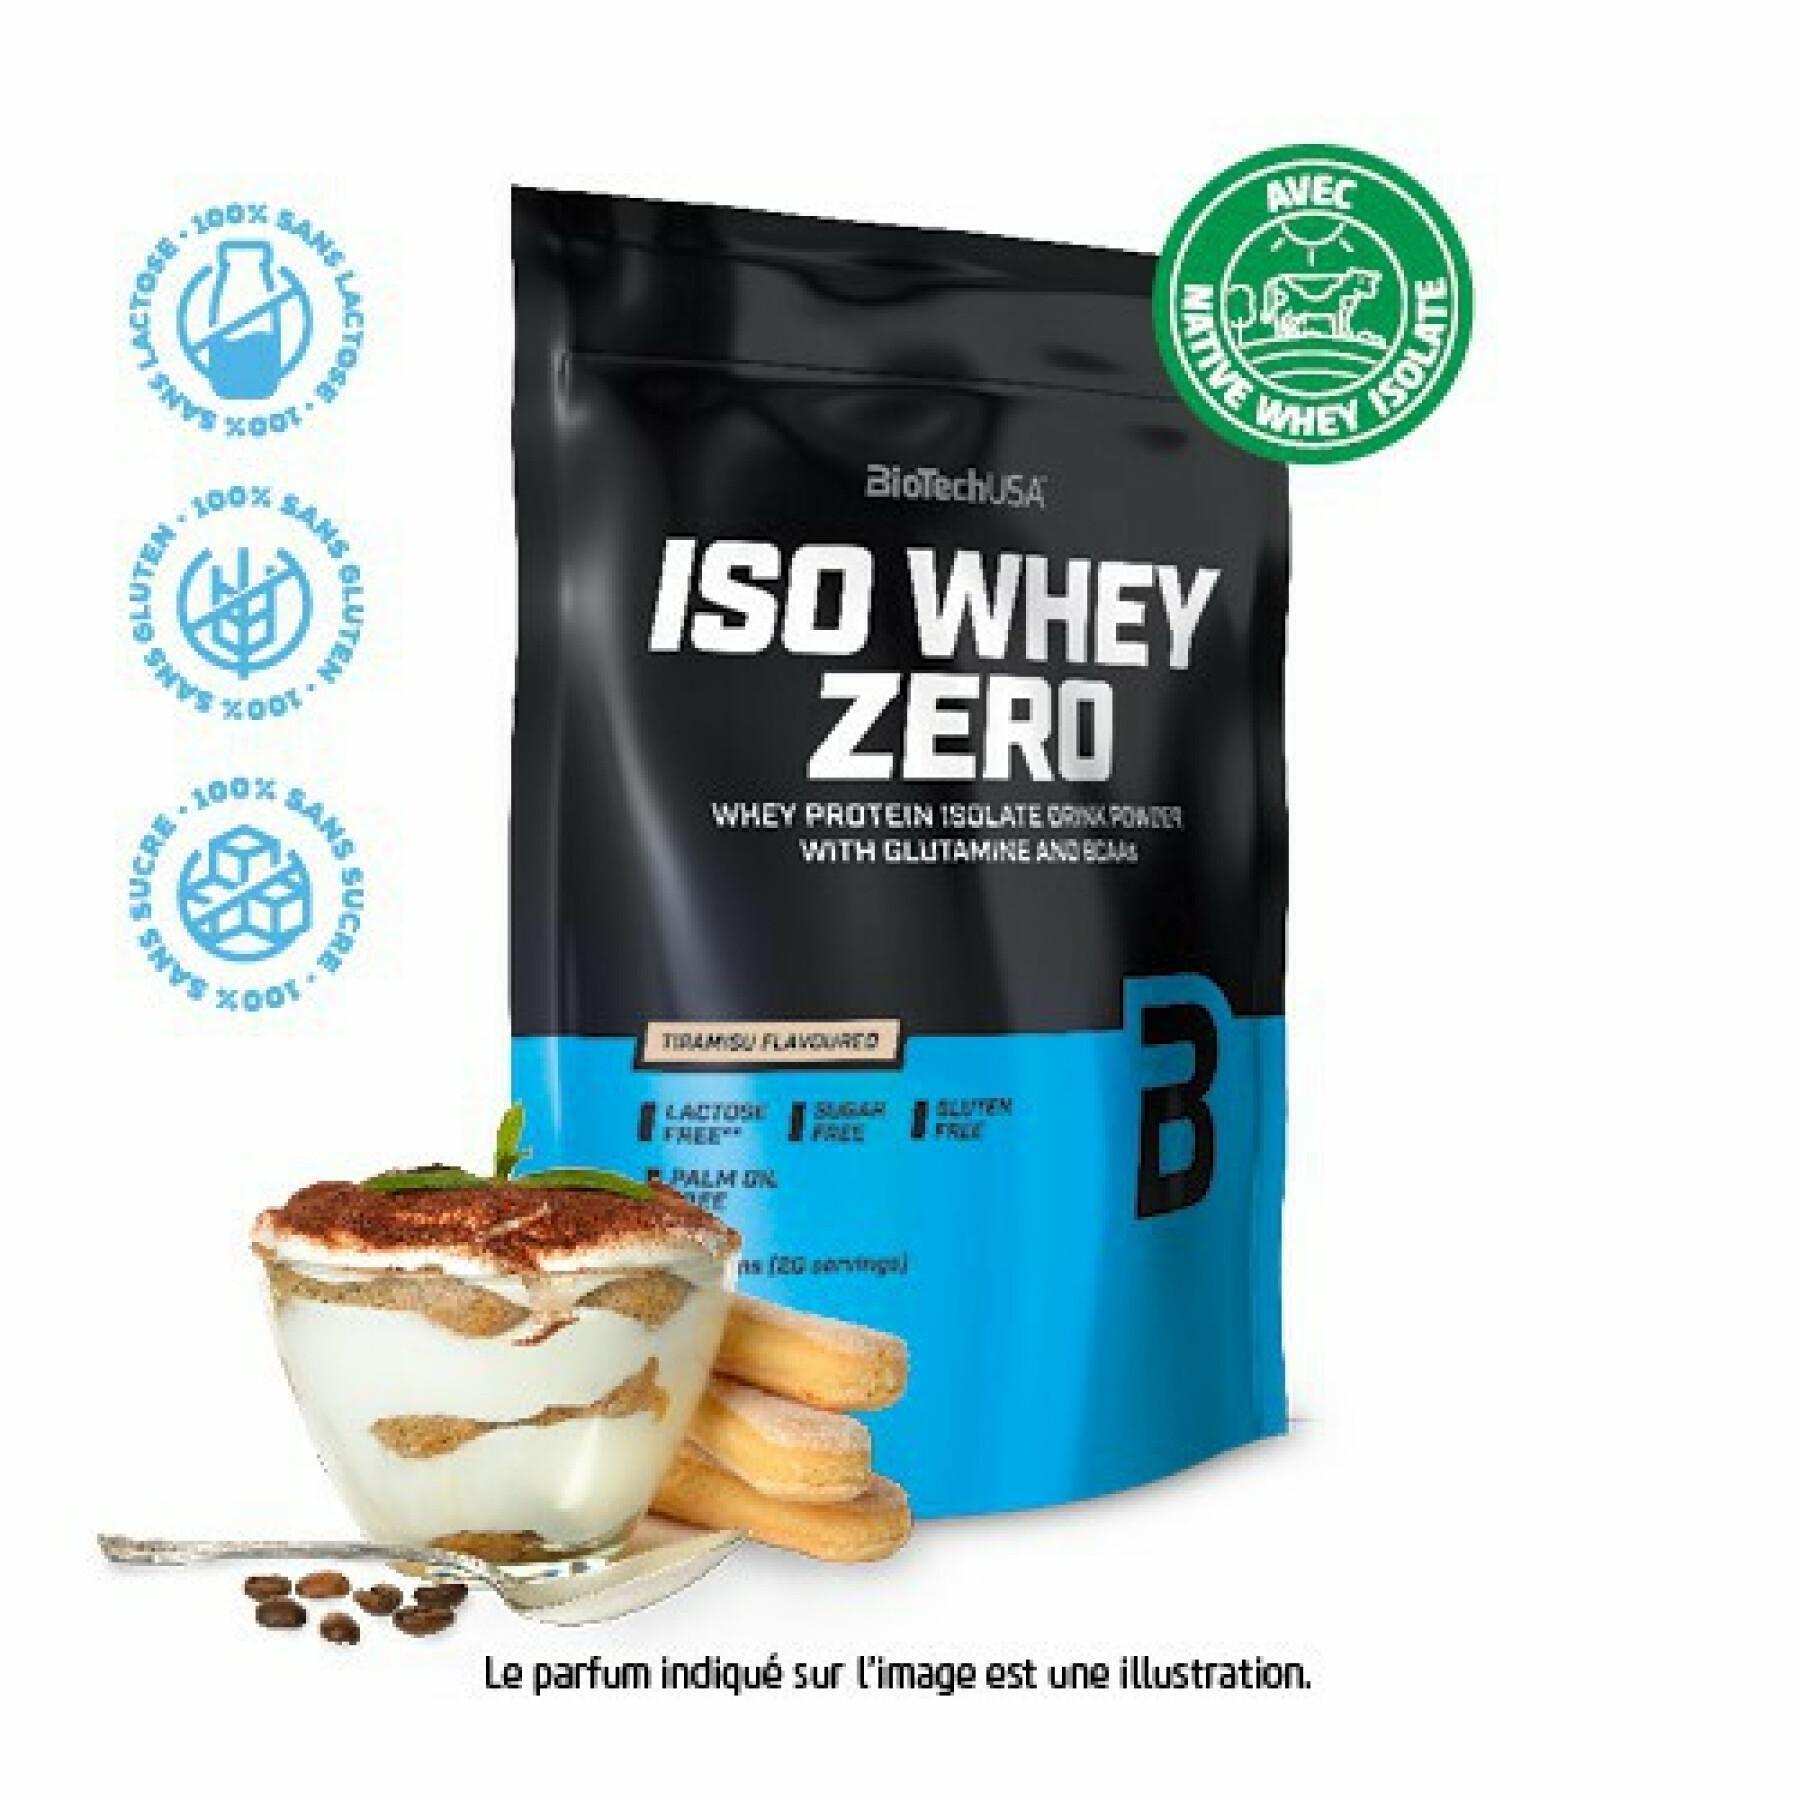 Pacote de 10 sacos de proteína Biotech USA iso whey zero lactose free - Tiramisu - 500g